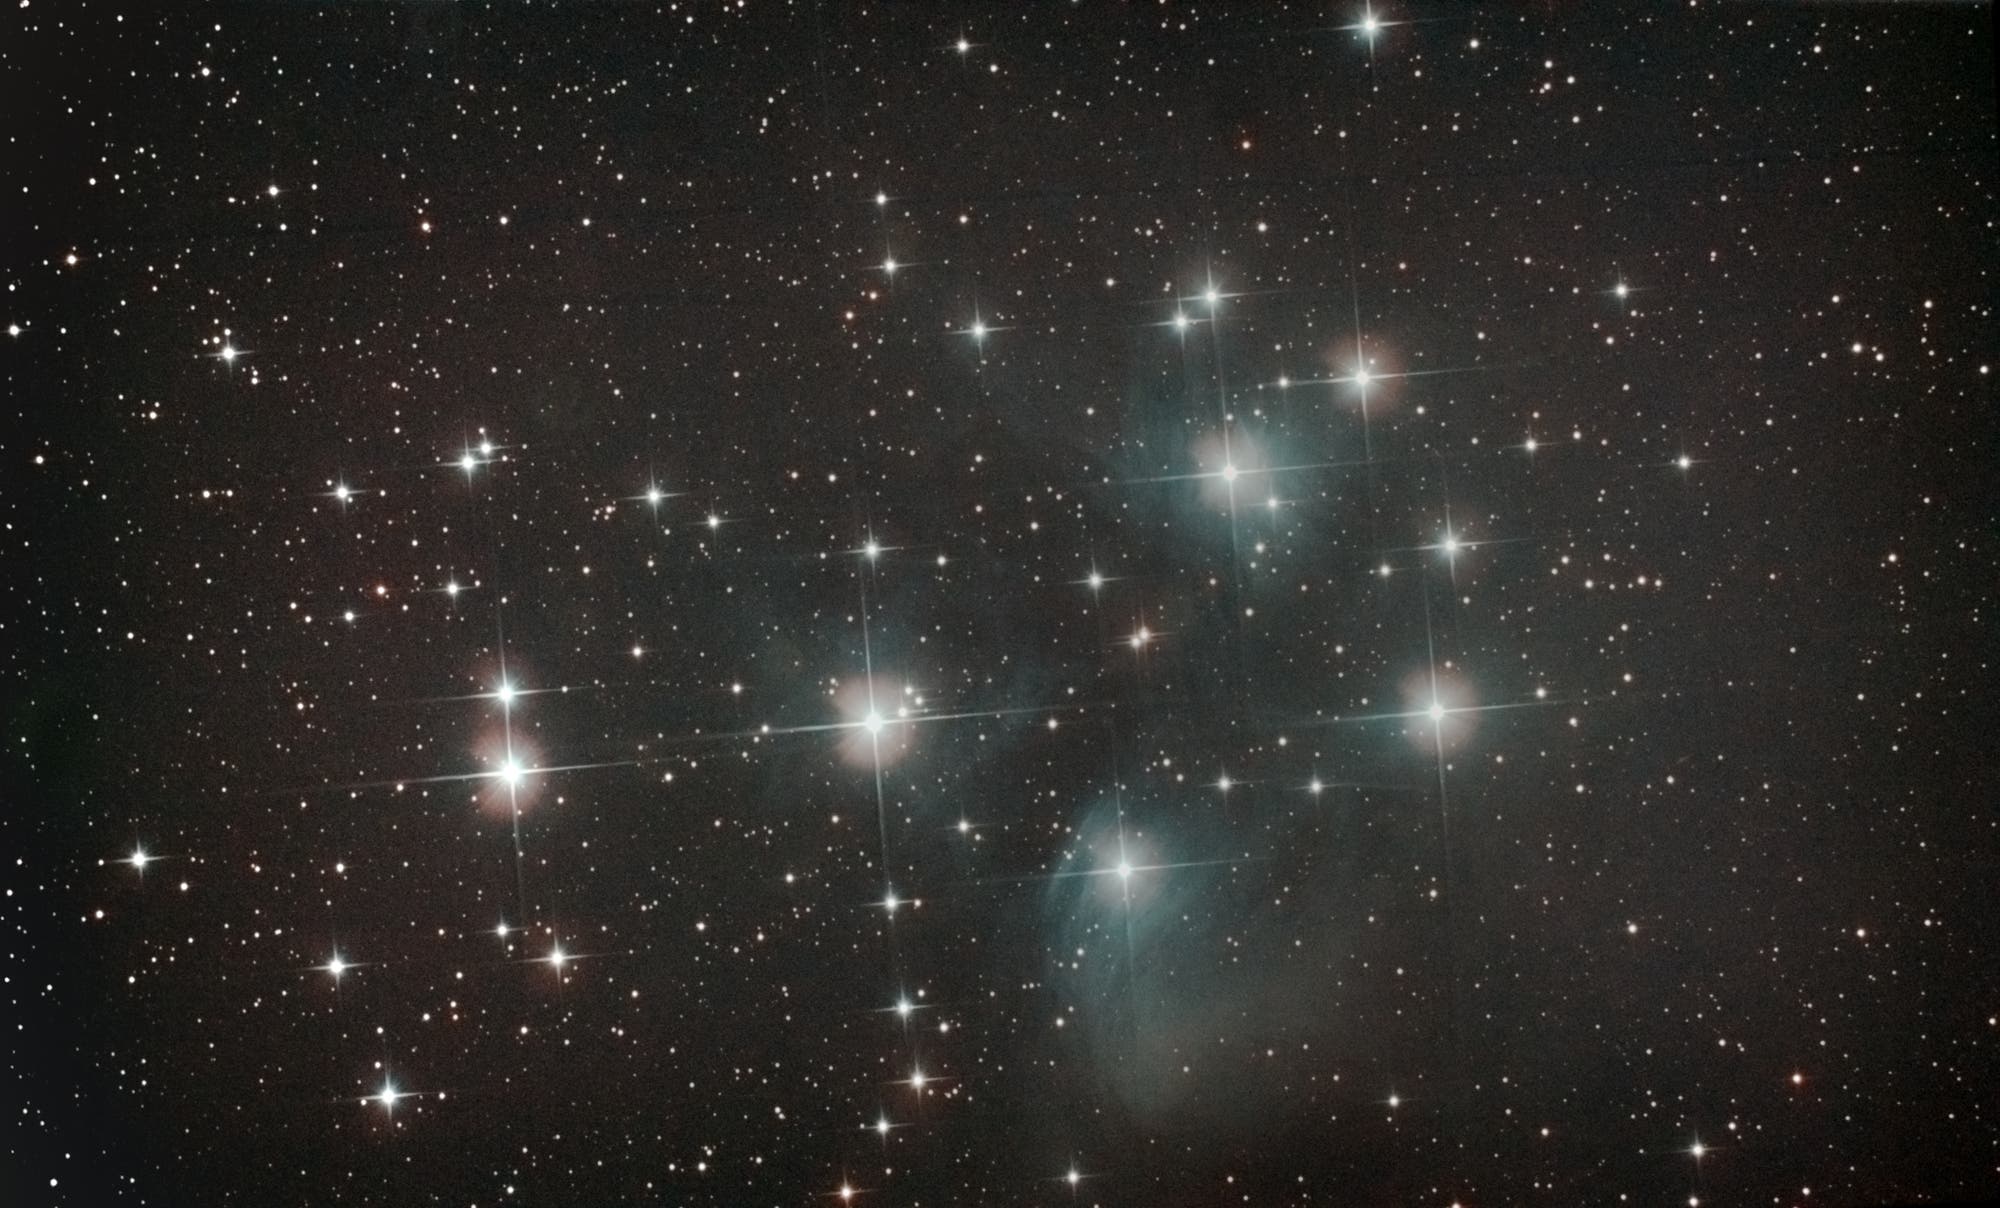 offener Sternhaufen Plejaden (M 45) im Sternbild Stier (Taurus)